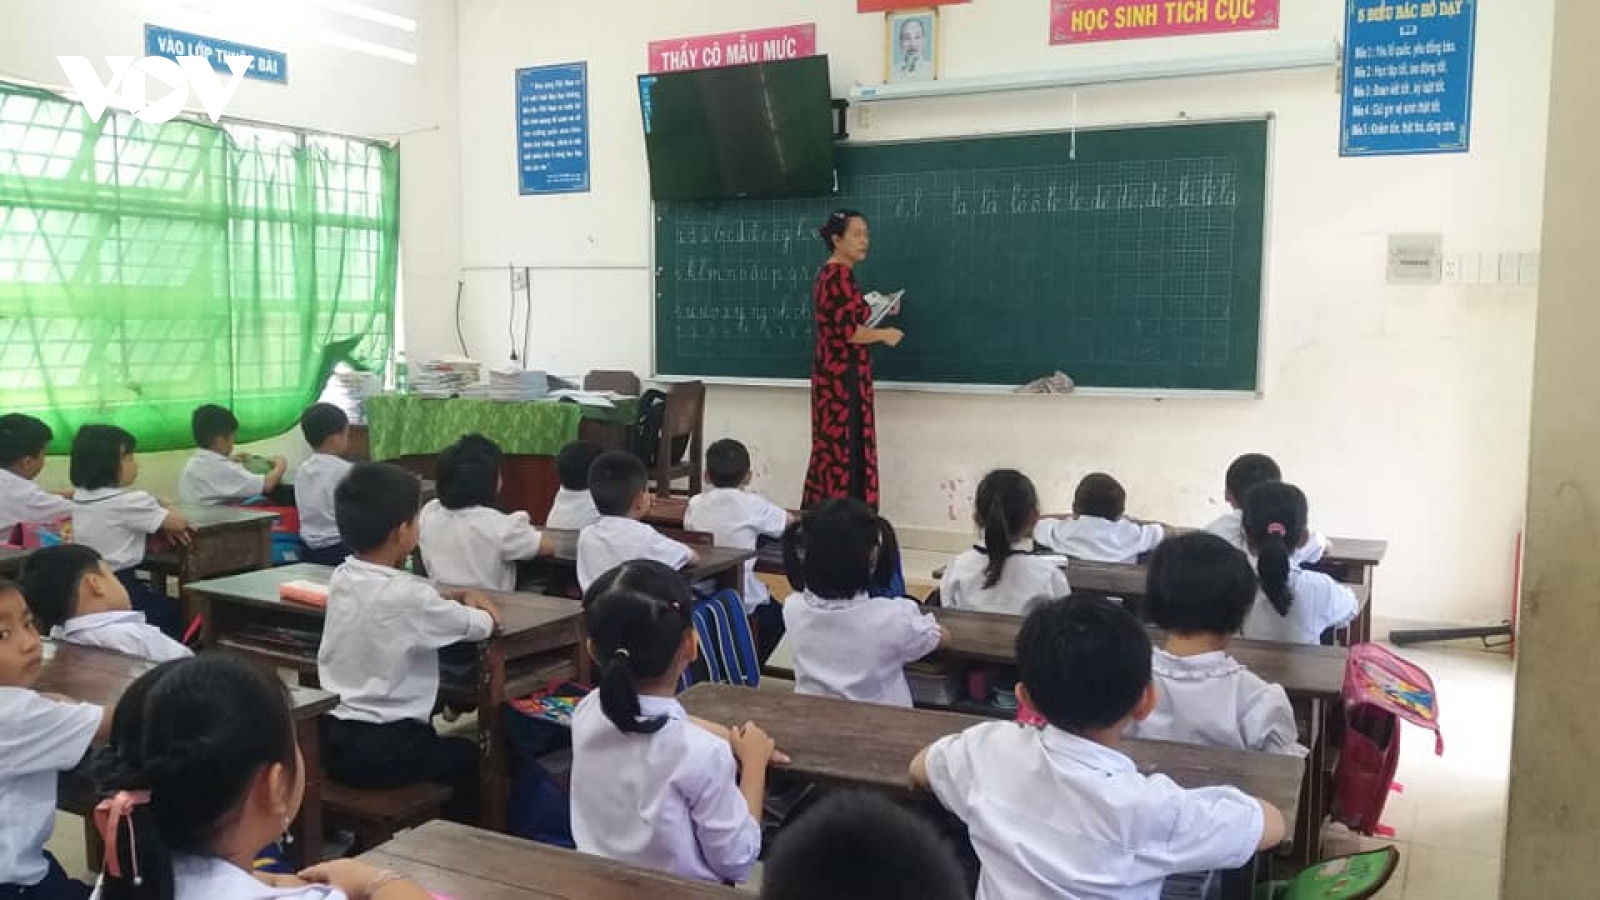 Tiền Giang, Bến Tre siết chặt công tác phòng chống covid-19 trong trường học